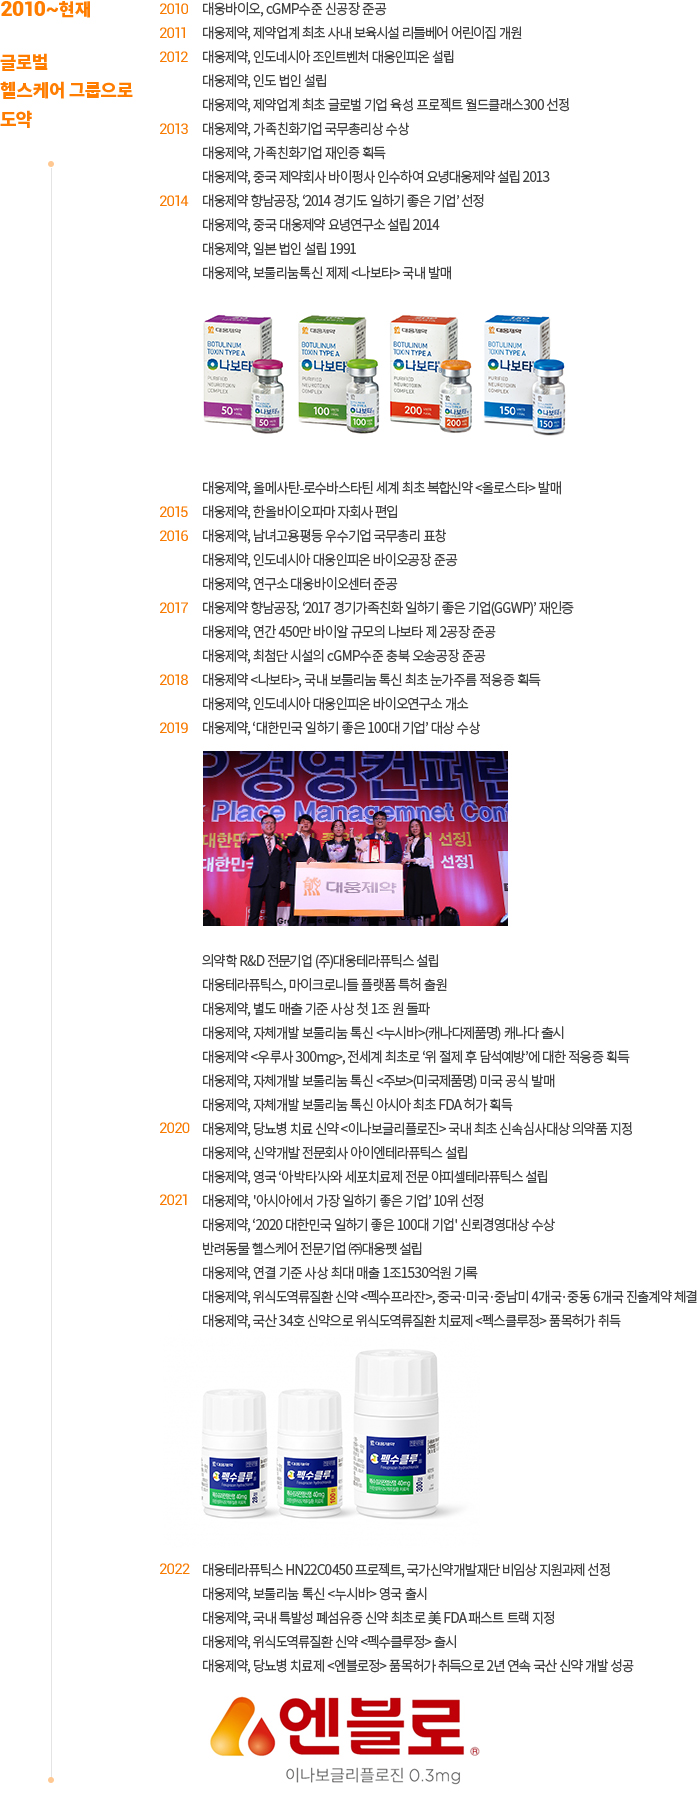 2010 ~ 현재 글로벌 헬스케어 그룹으로 도약